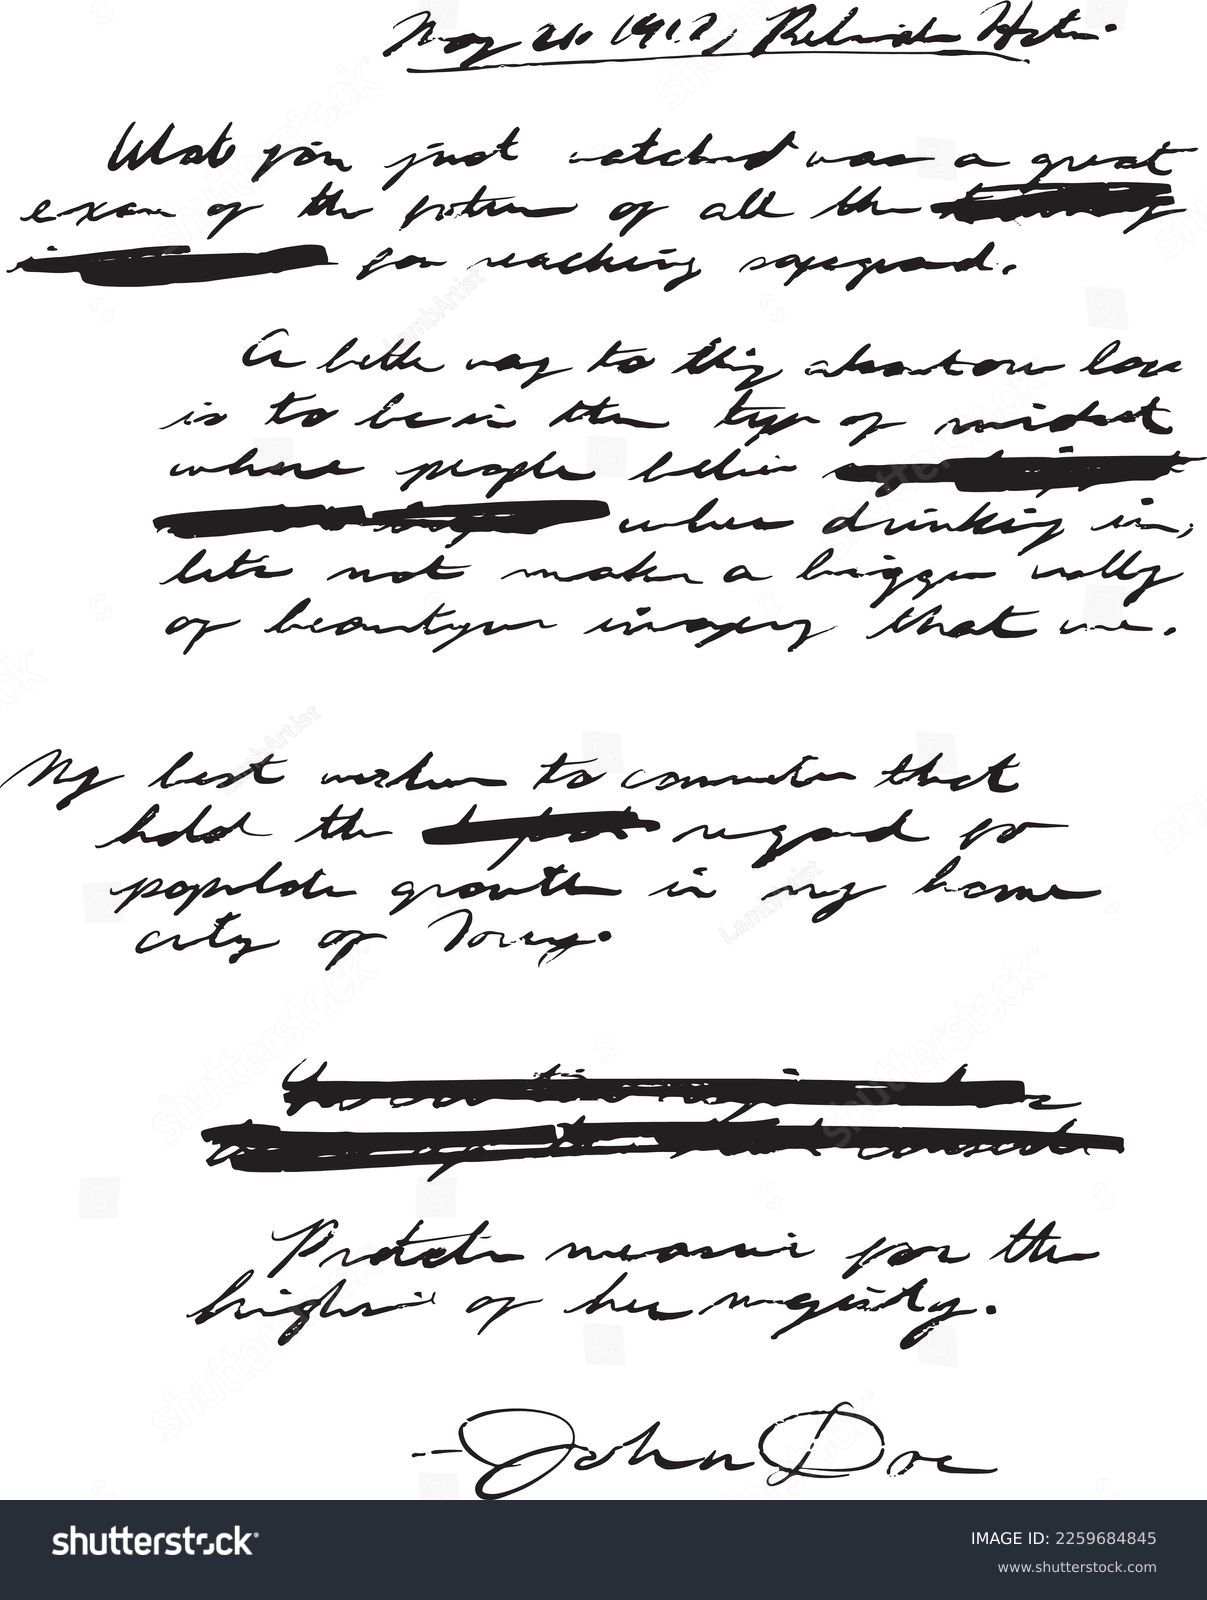 アンティークの手書き、手書きのメモ、またはジャーナルエントリーが筆記体、読めない、読めない、汚い手書きの領域を取り除いた状態、または一部が殴り書きされ検閲された状態。John Doeと署名。シームレス。のベクター画像素材